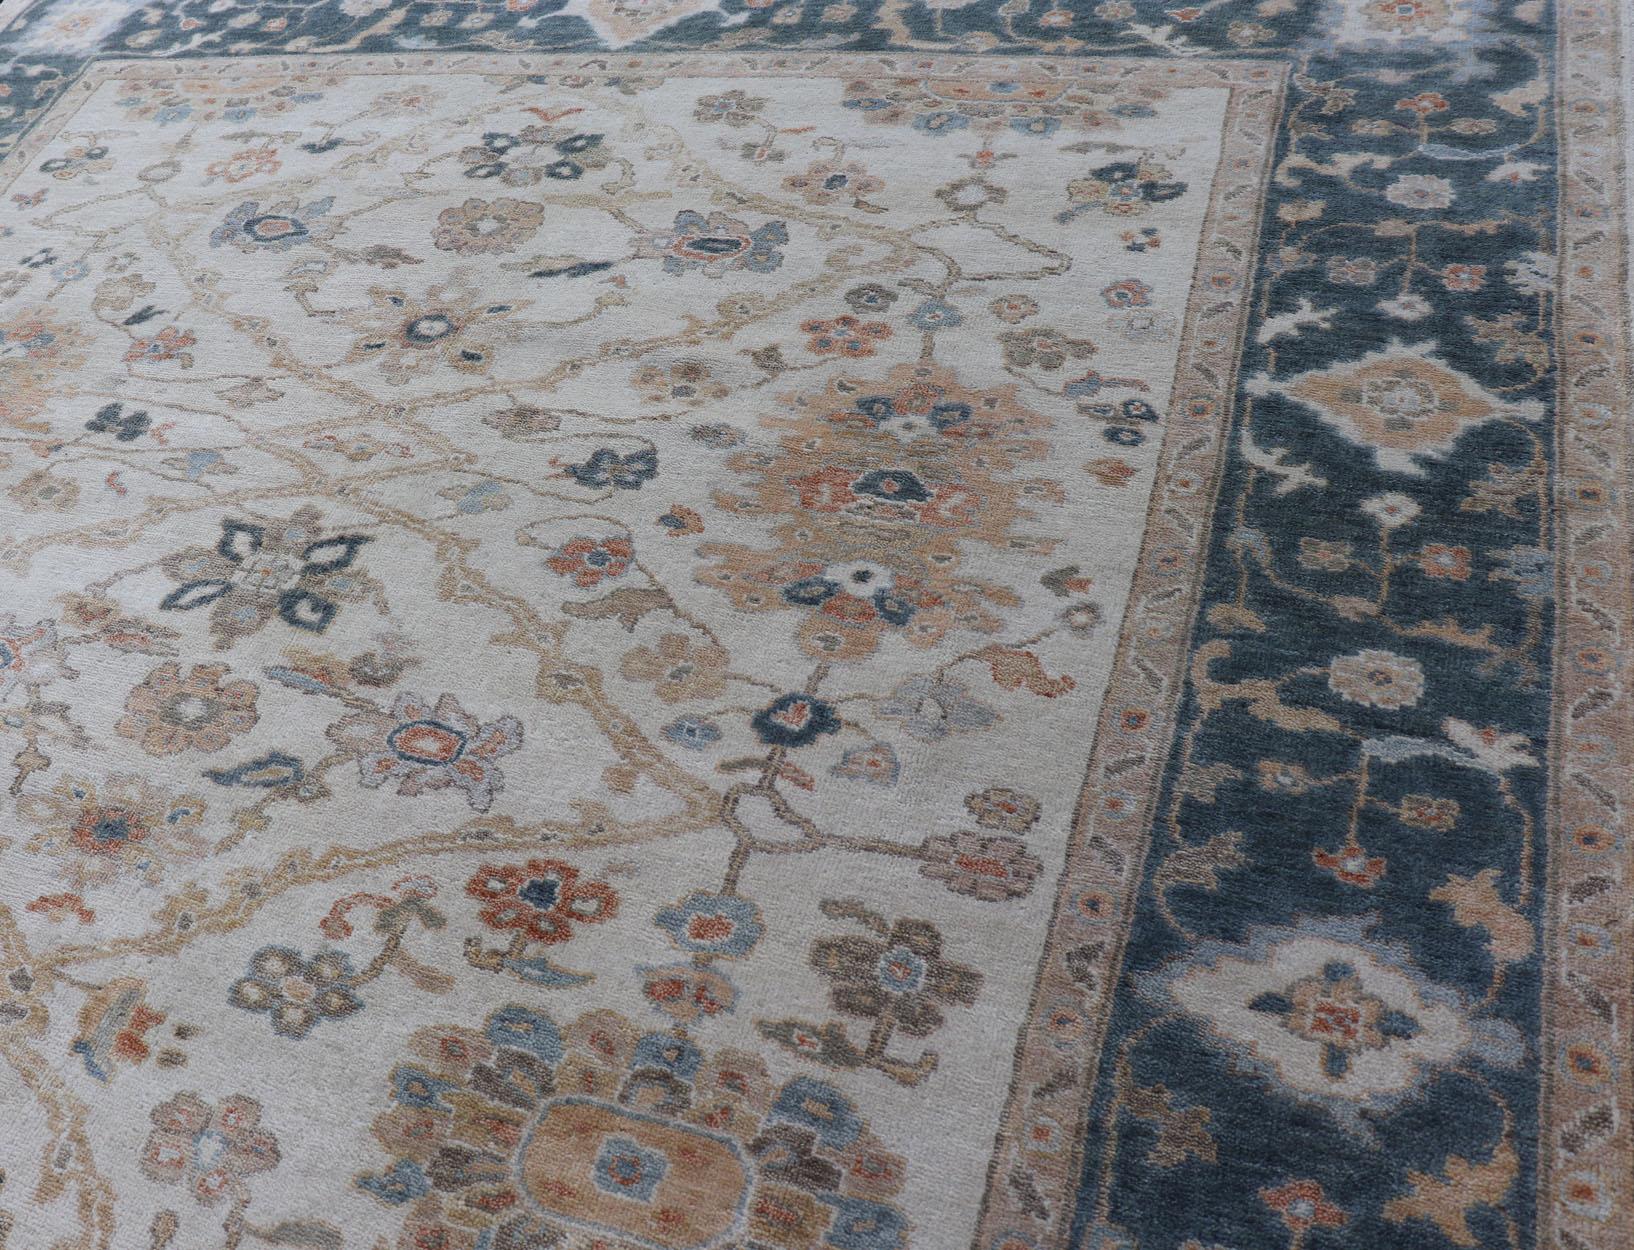 Oushak Design-Teppich von Keivan Woven Arts in Teal Blau, Creme und mehrfarbigen Farben
Maße 7'9 x 9'9
Dieser Oushak wurde in Indien von Hand geknüpft und ist fein gewebt. Die cremefarbene Mitte enthält ein einzigartiges Design mit gemeinsamen